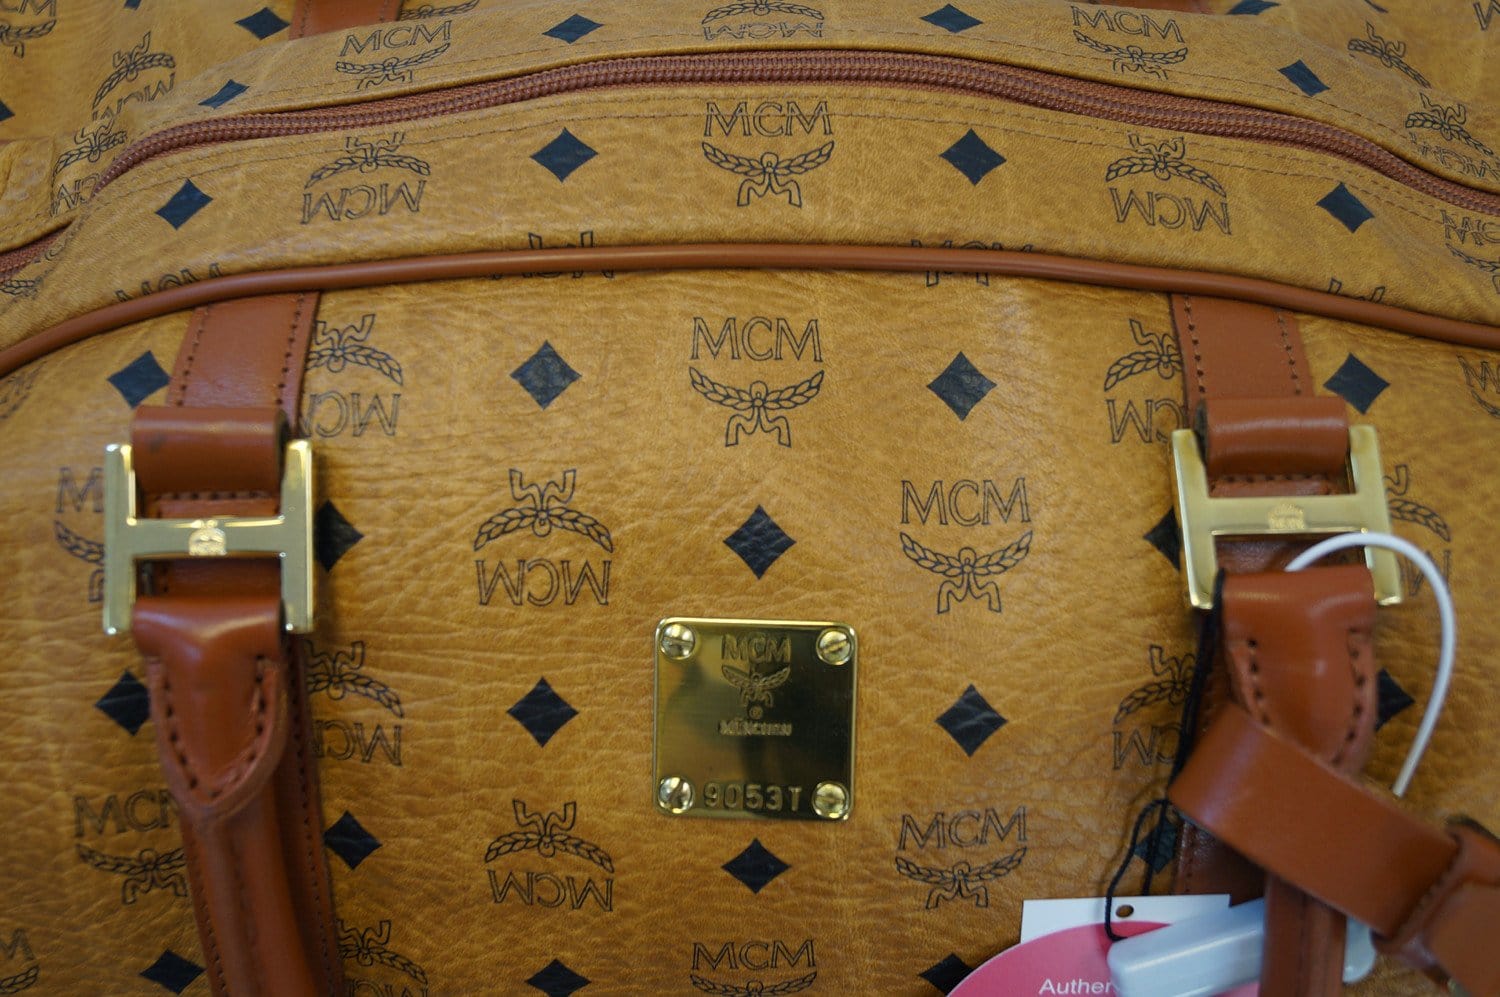 mcm bag original price